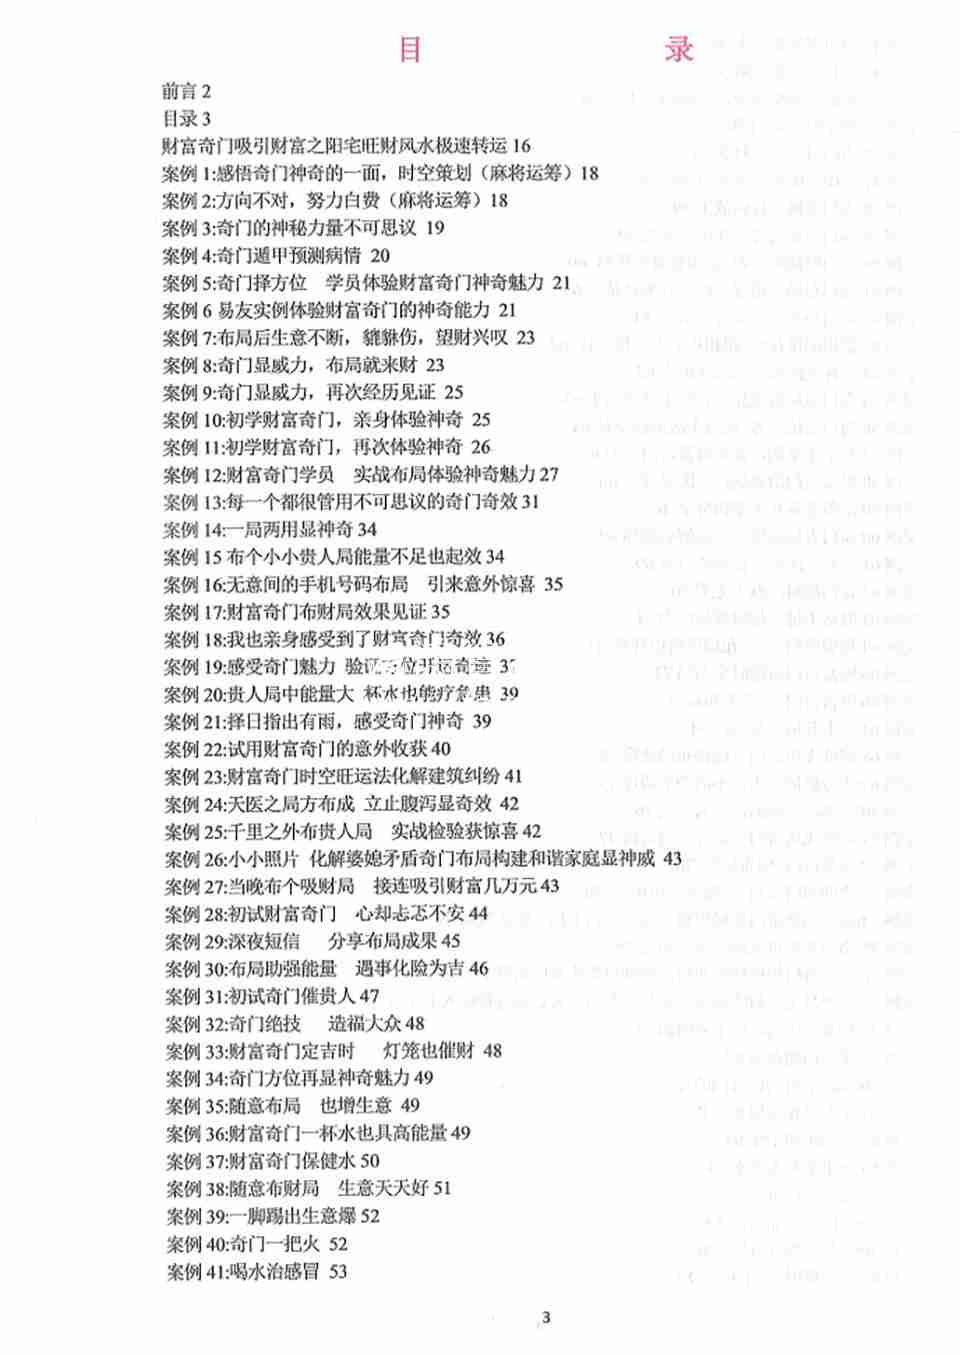 飛魚奇門運籌秘術案例566個.pdf